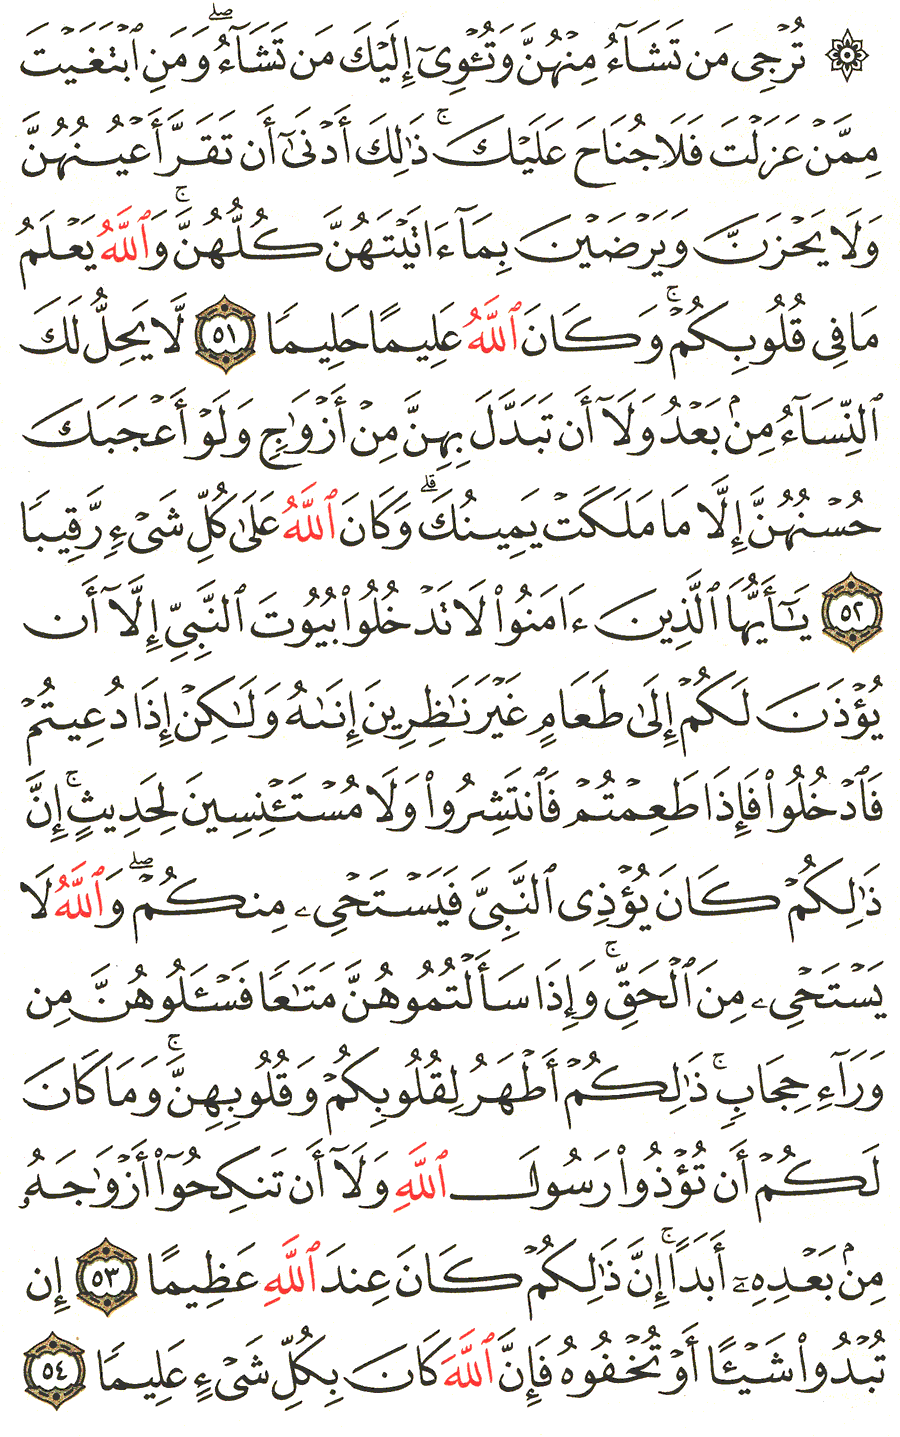 الصفحة 425 من القرآن الكريم